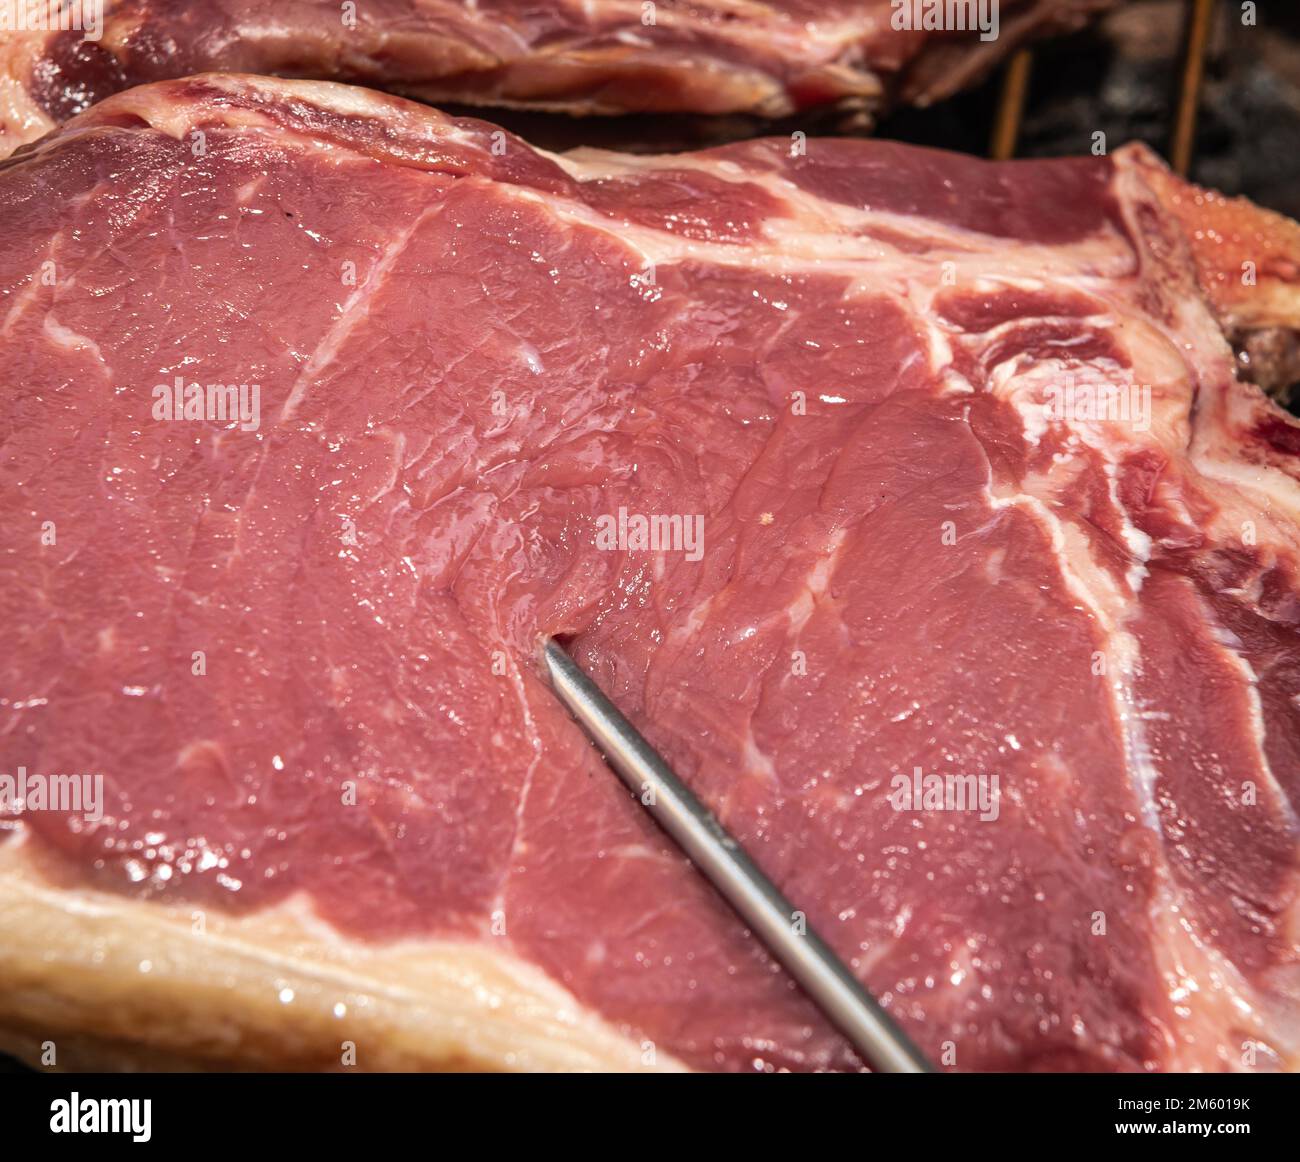 Bistecca di carne alla griglia (bistecca di manzo) su barbecue con termometro di carne. Focus selettivo - Trentino Alto Adige, Italia settentrionale - Europa Foto Stock